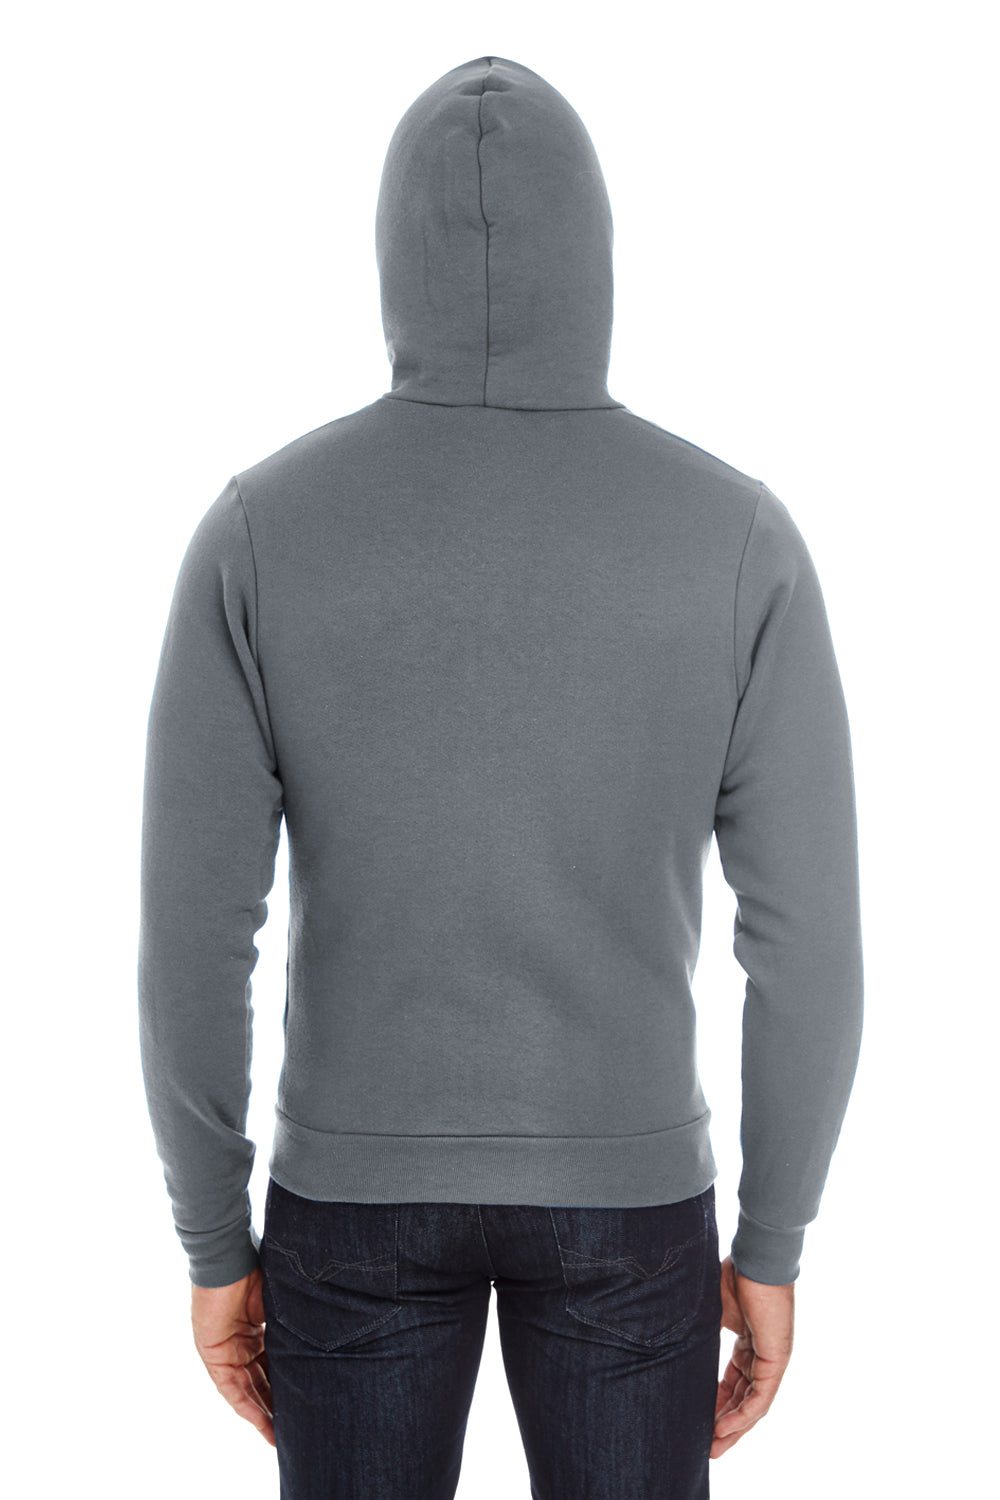 American Apparel F497W Mens Flex Fleece Full Zip Hooded Sweatshirt Hoodie Asphalt Grey Back